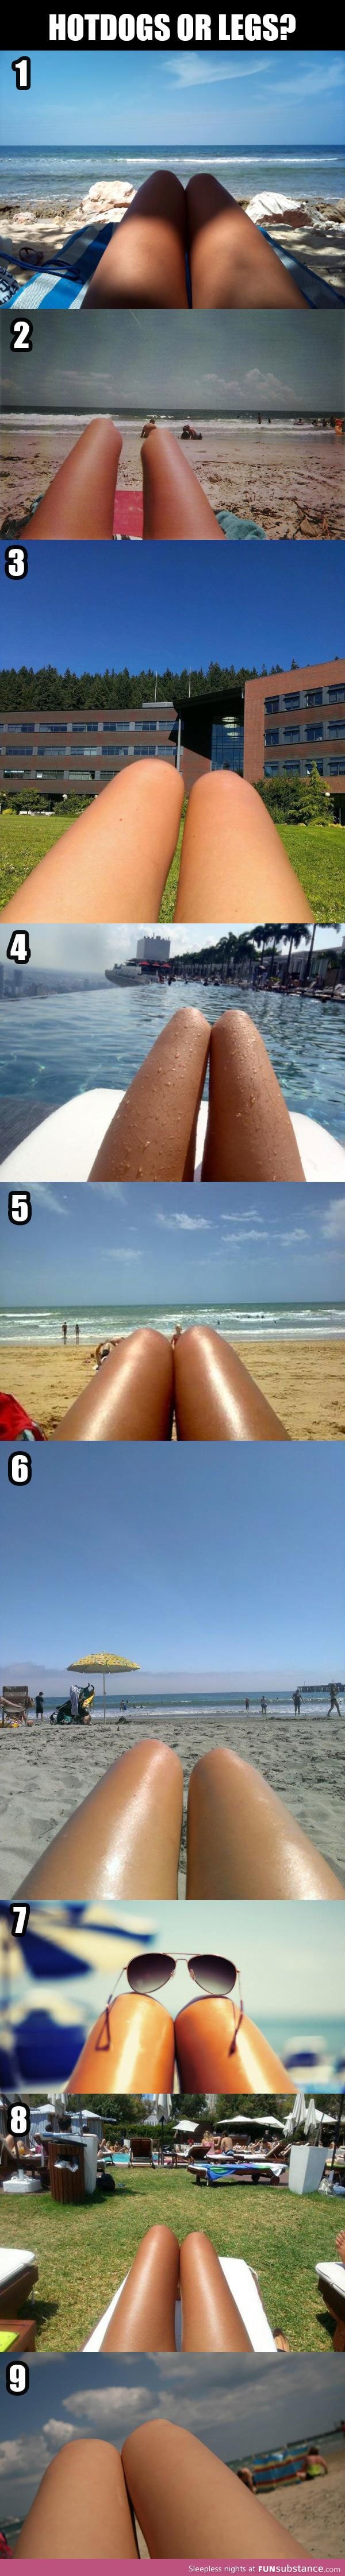 Hotdogs or legs?